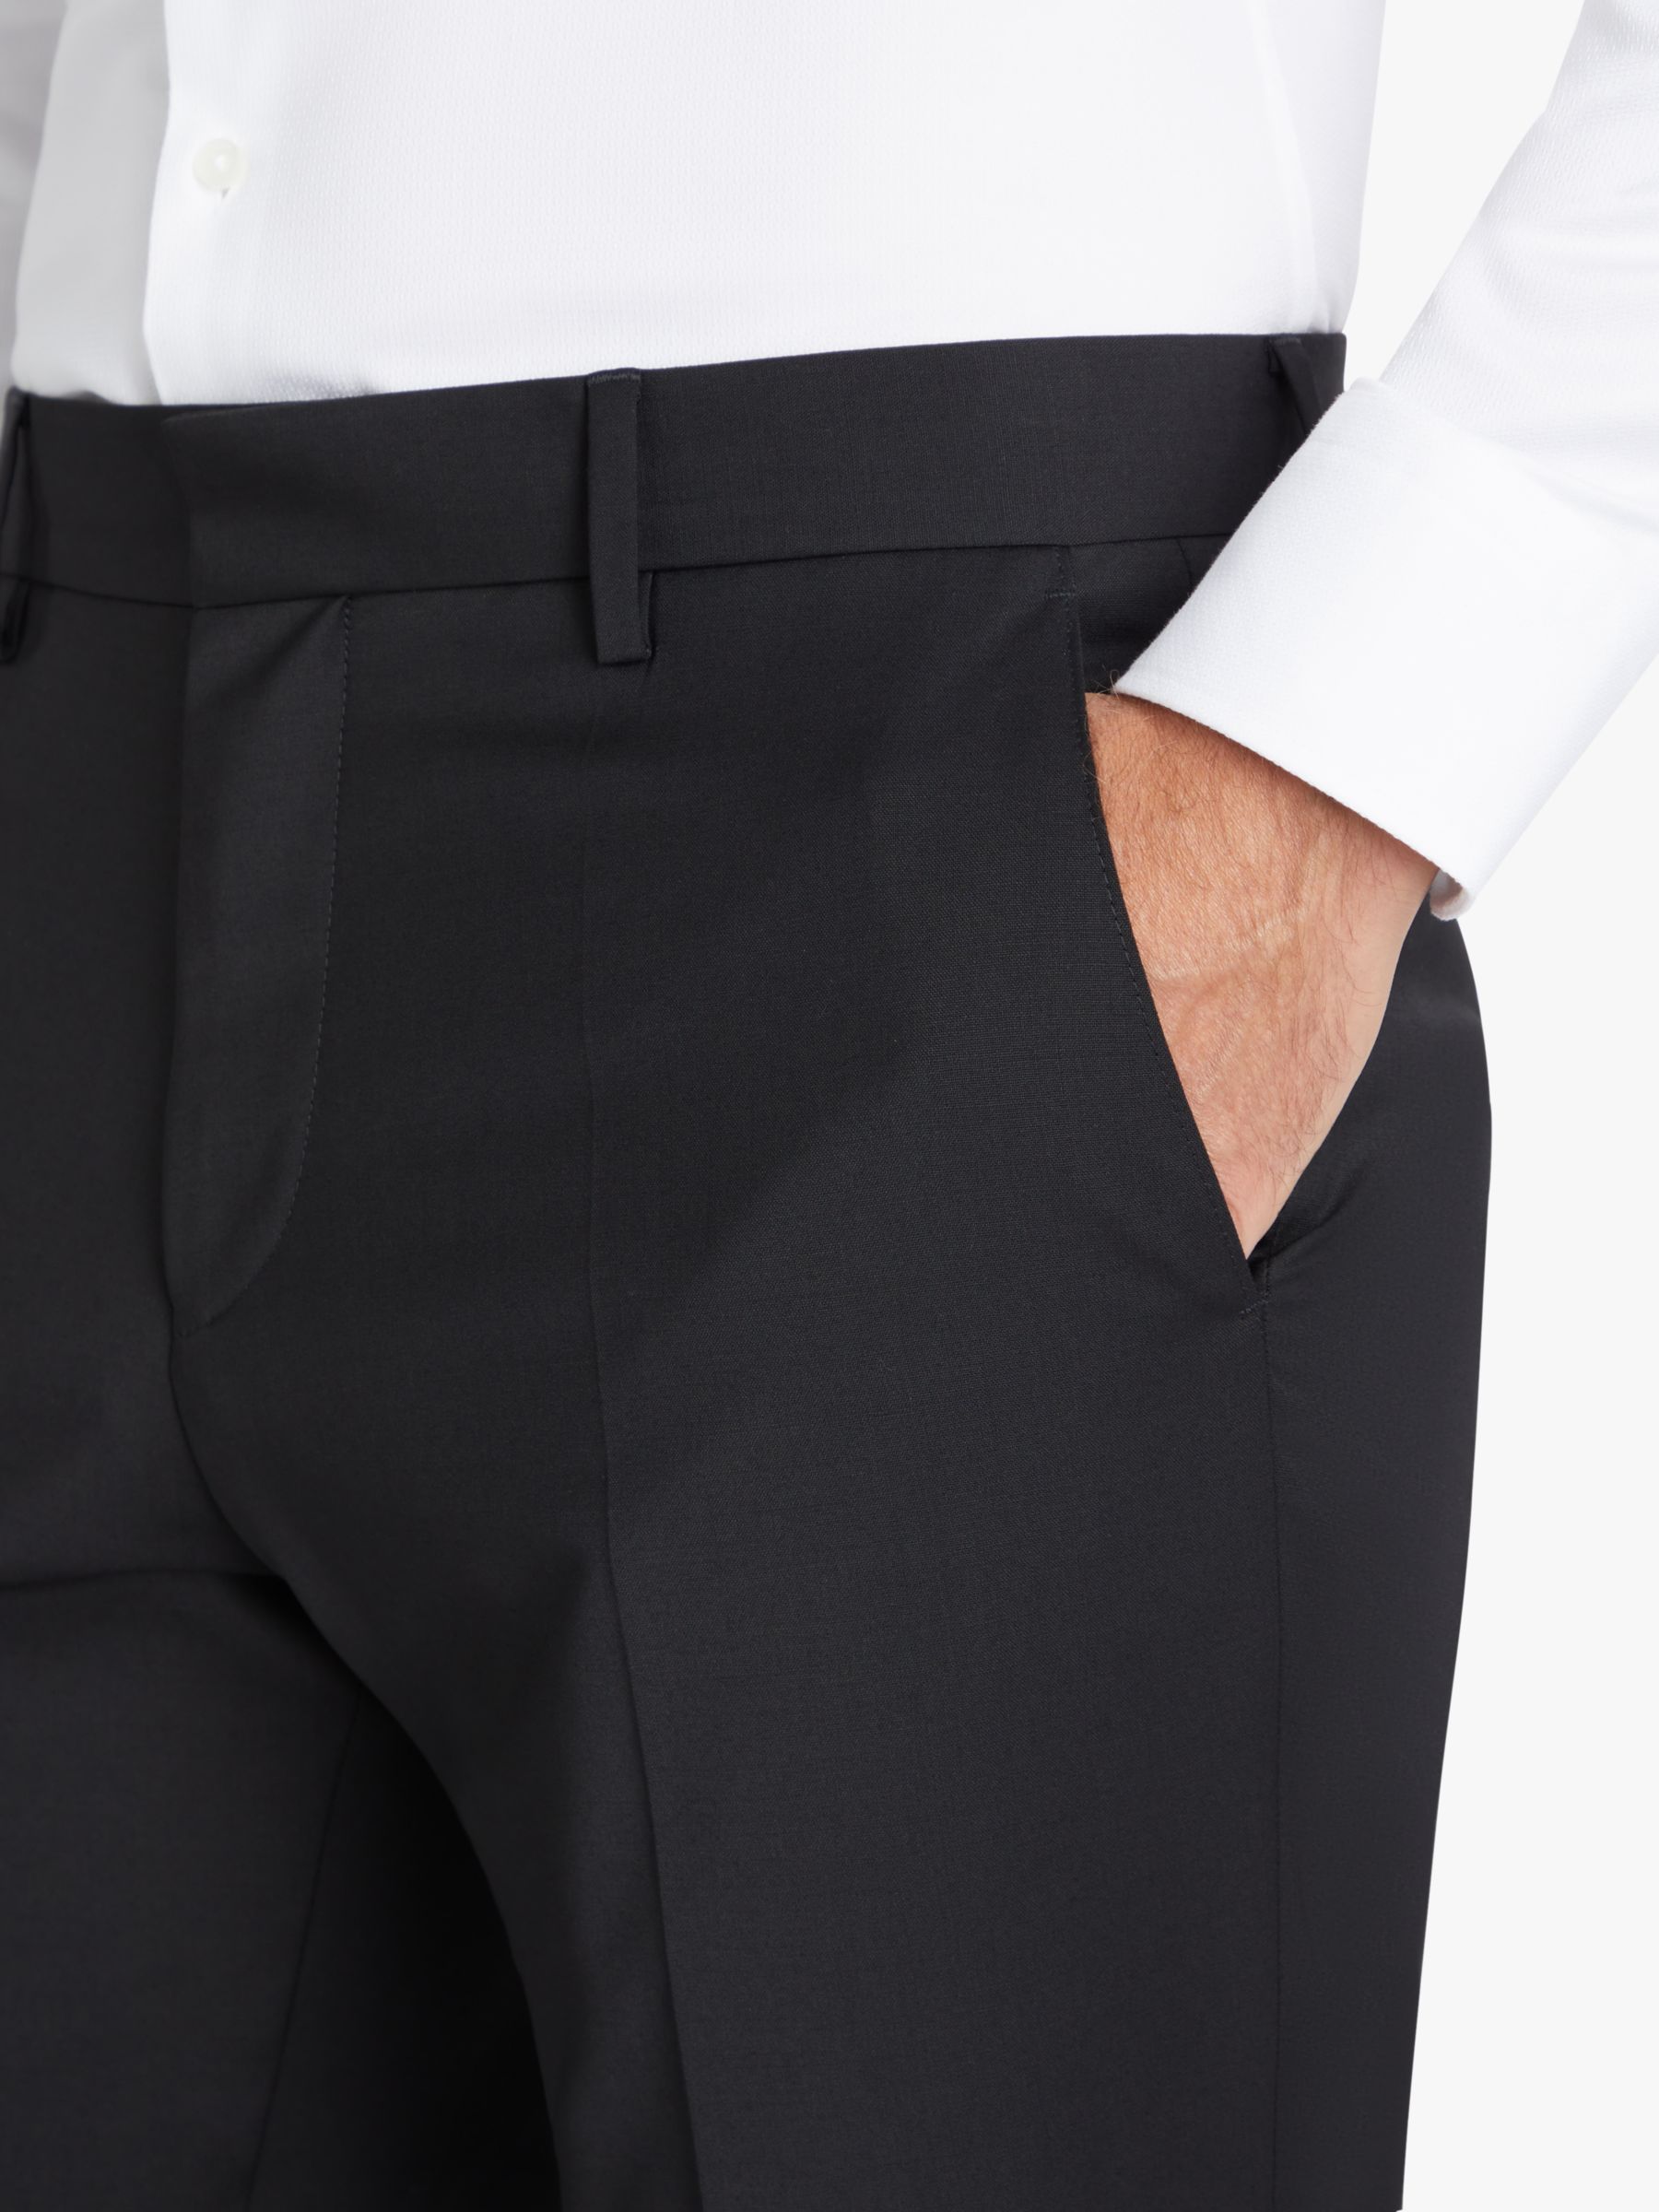 BOSS Genius Virgin Wool Slim Fit Suit Trousers, Black, 30R